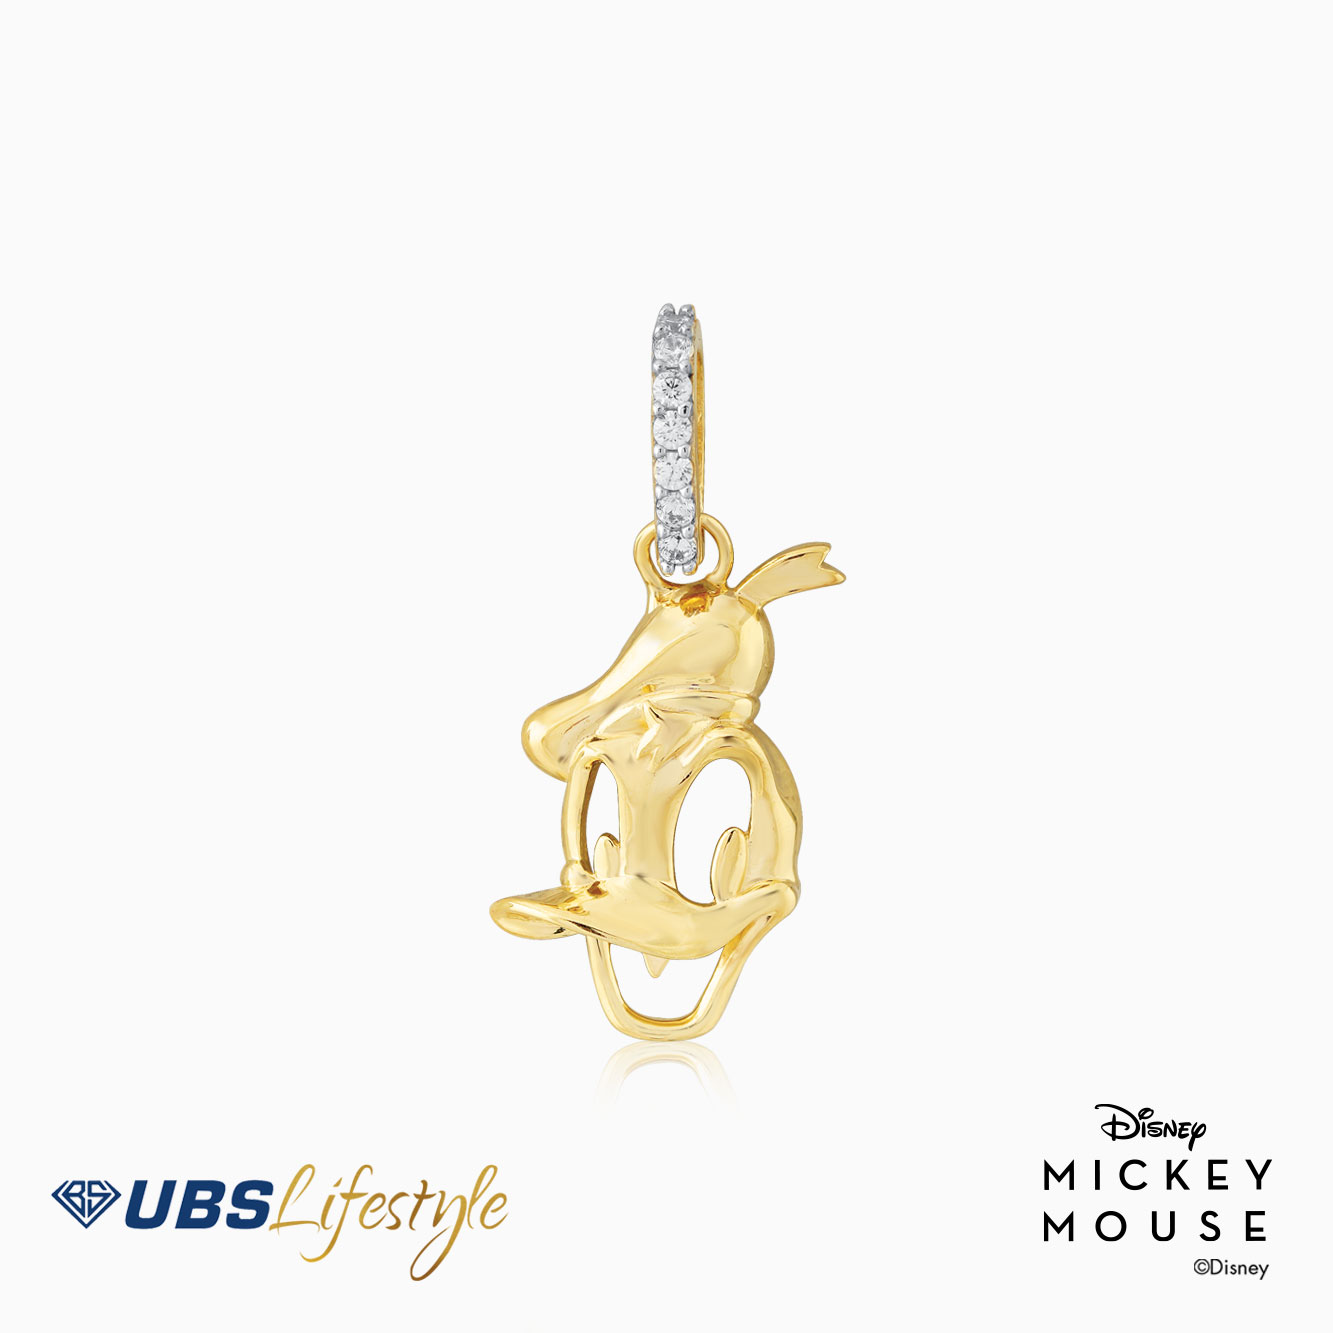 UBS Liontin Emas Disney Donald Duck - Cly0012 - 17K